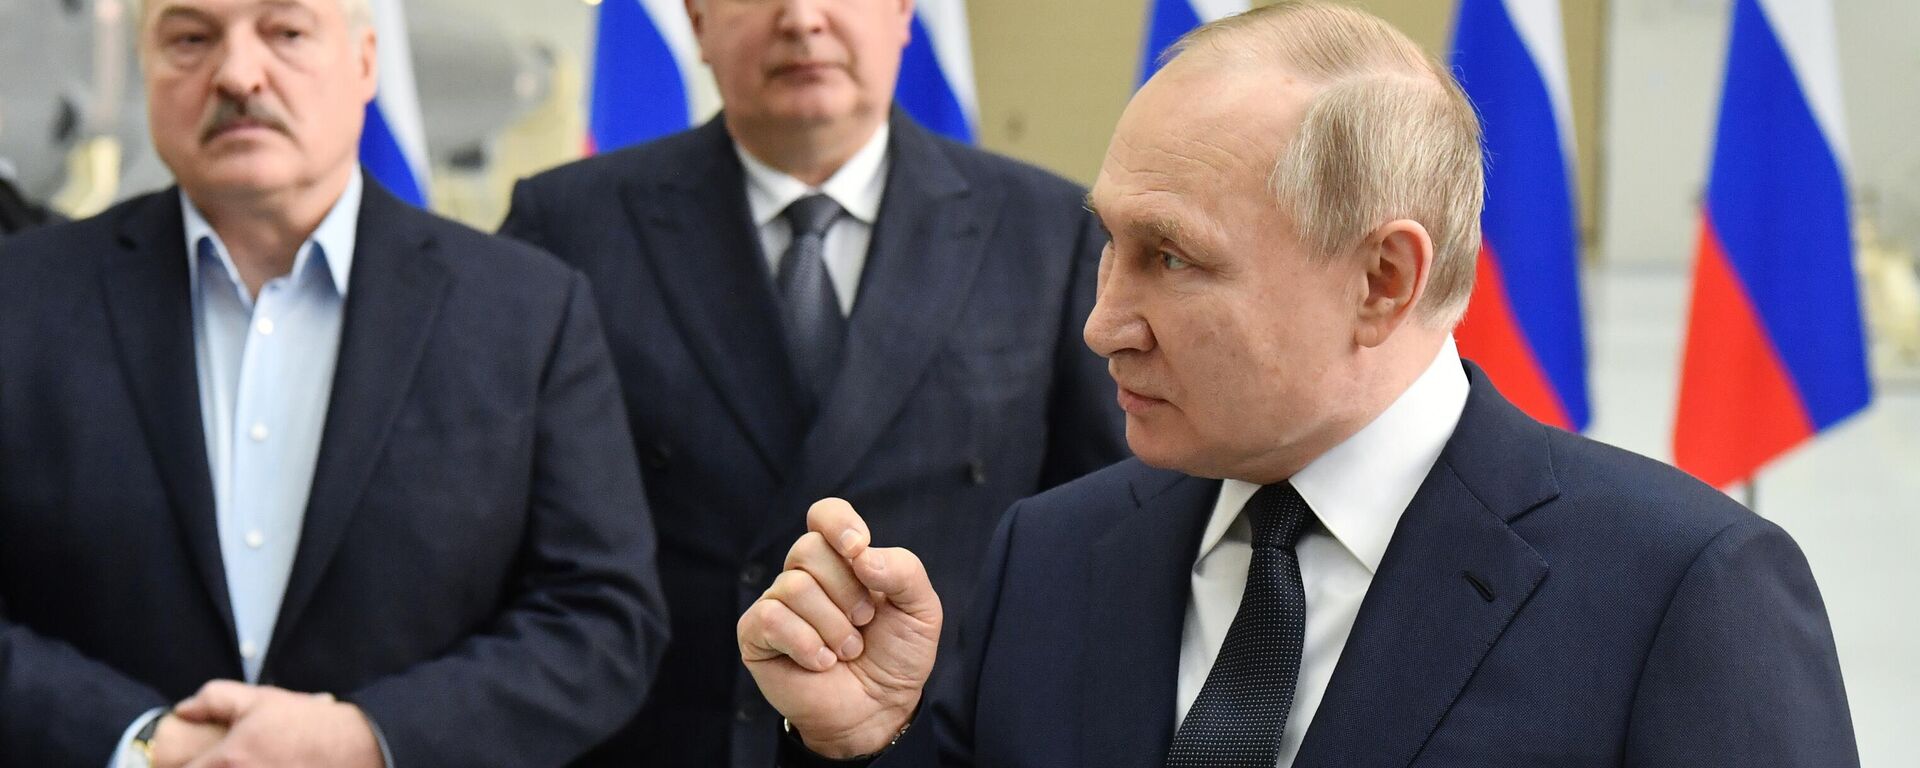 Presidente russo, Vladimir Putin, durante visita ao cosmódromo Vostochny com seu homólogo belarusso, Aleksandr Lukashenko, região russa de Amur, 12 de abril de 2022 - Sputnik Brasil, 1920, 12.04.2022